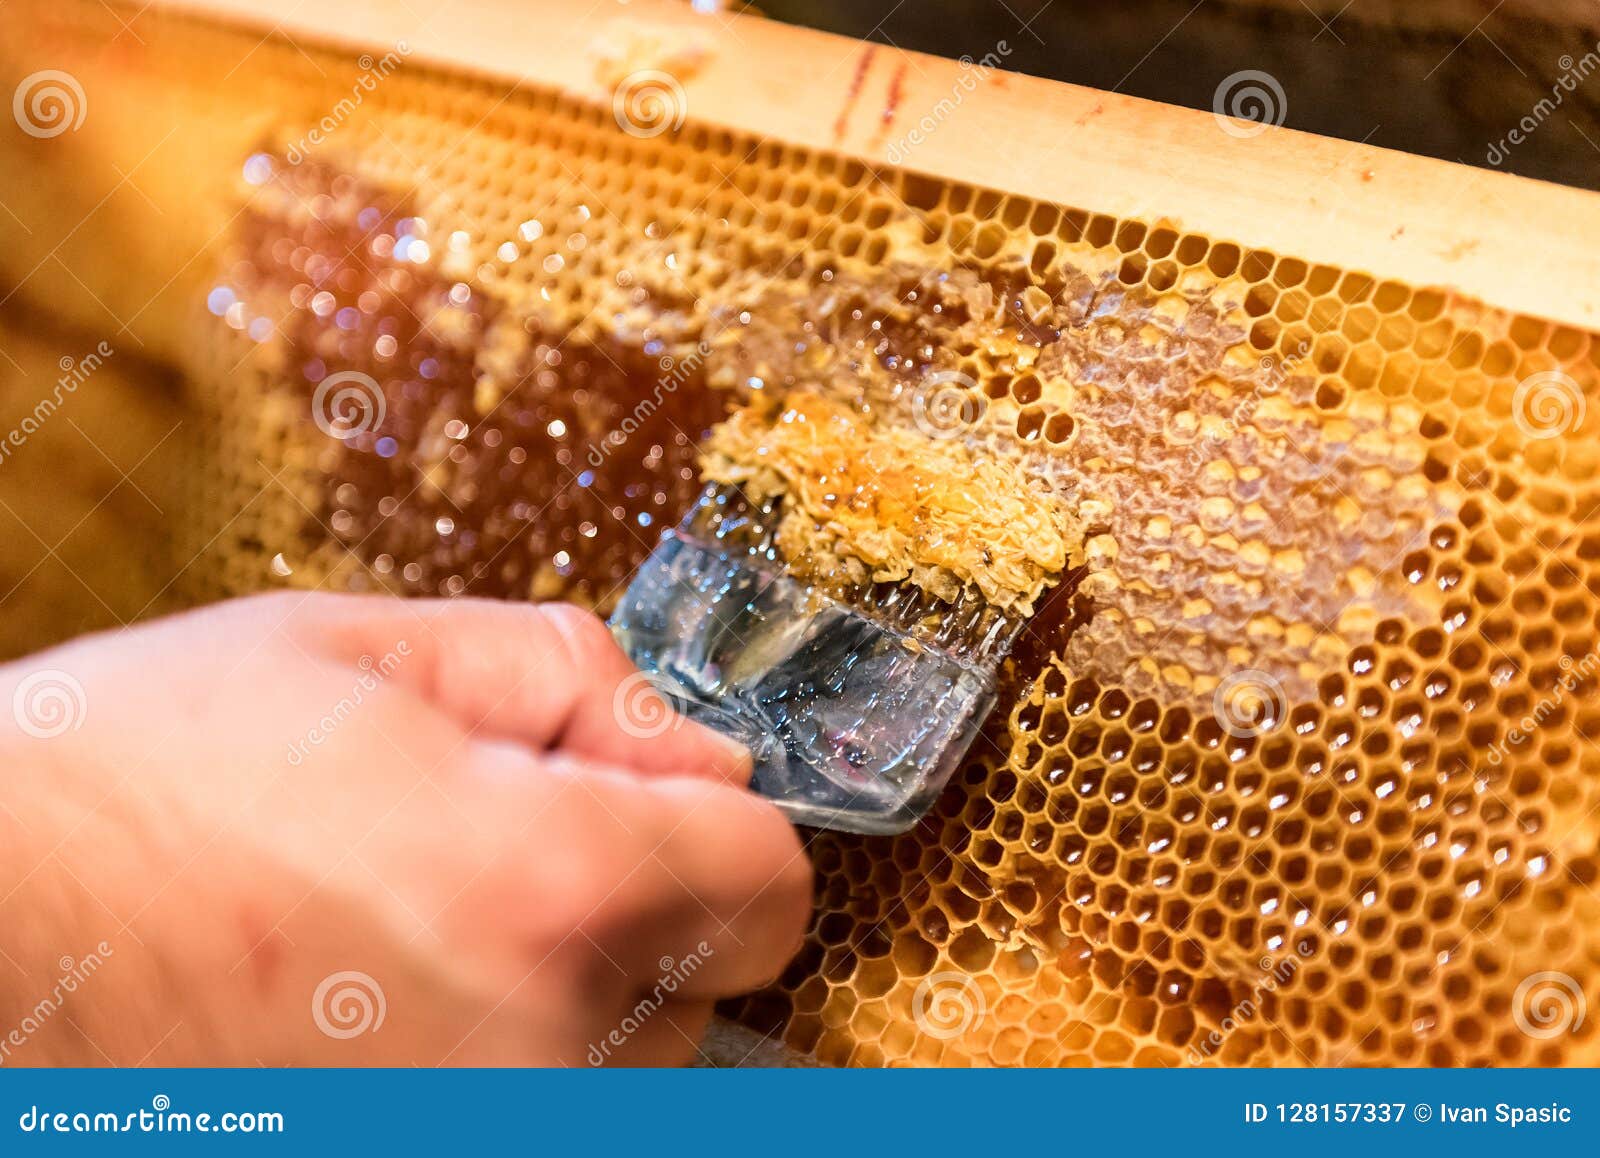 1000pcs abeille cadre en laiton nid d\'abeilles oeillets apiculteurs outils 